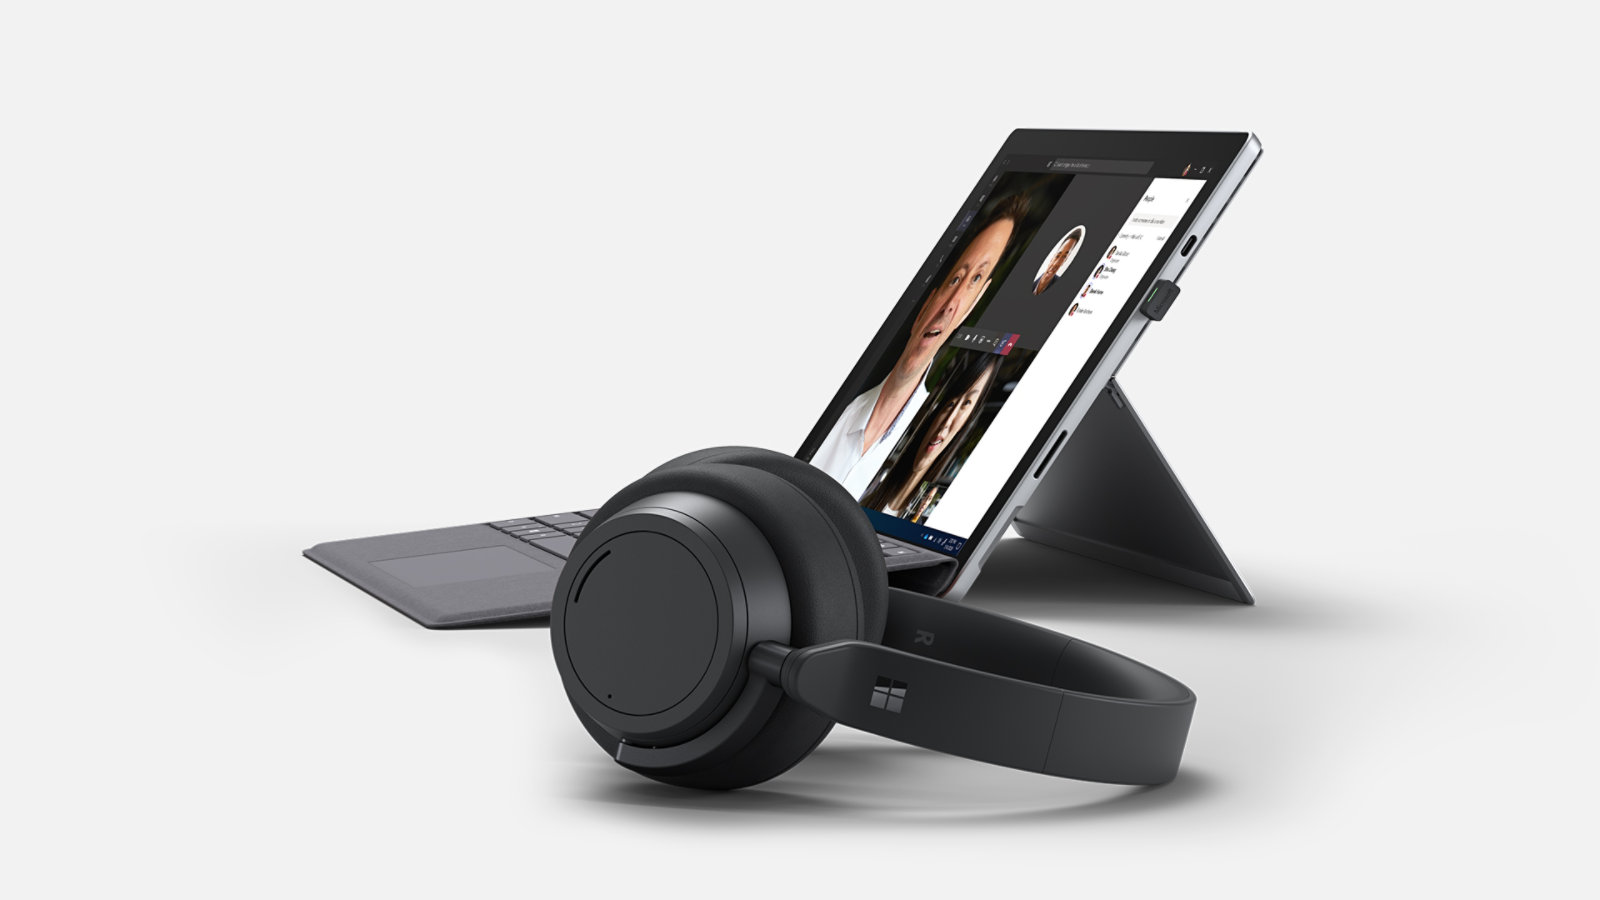 A Surface Pro 7+ oldalnézeti képe, az előtérben egy Surface Headphones 2+ eszközzel